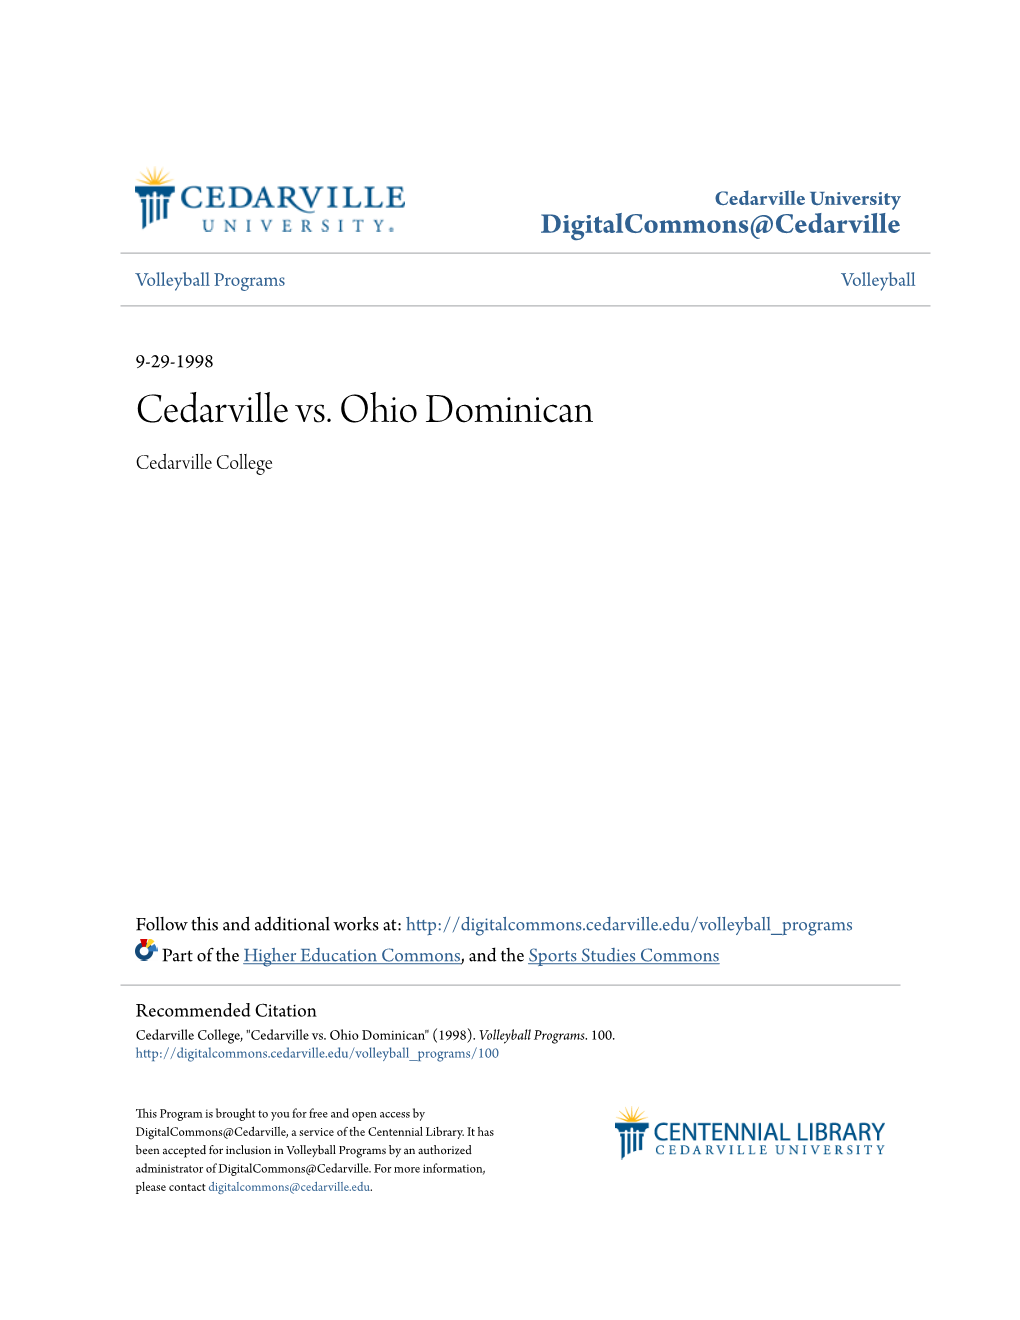 Cedarville Vs. Ohio Dominican Cedarville College